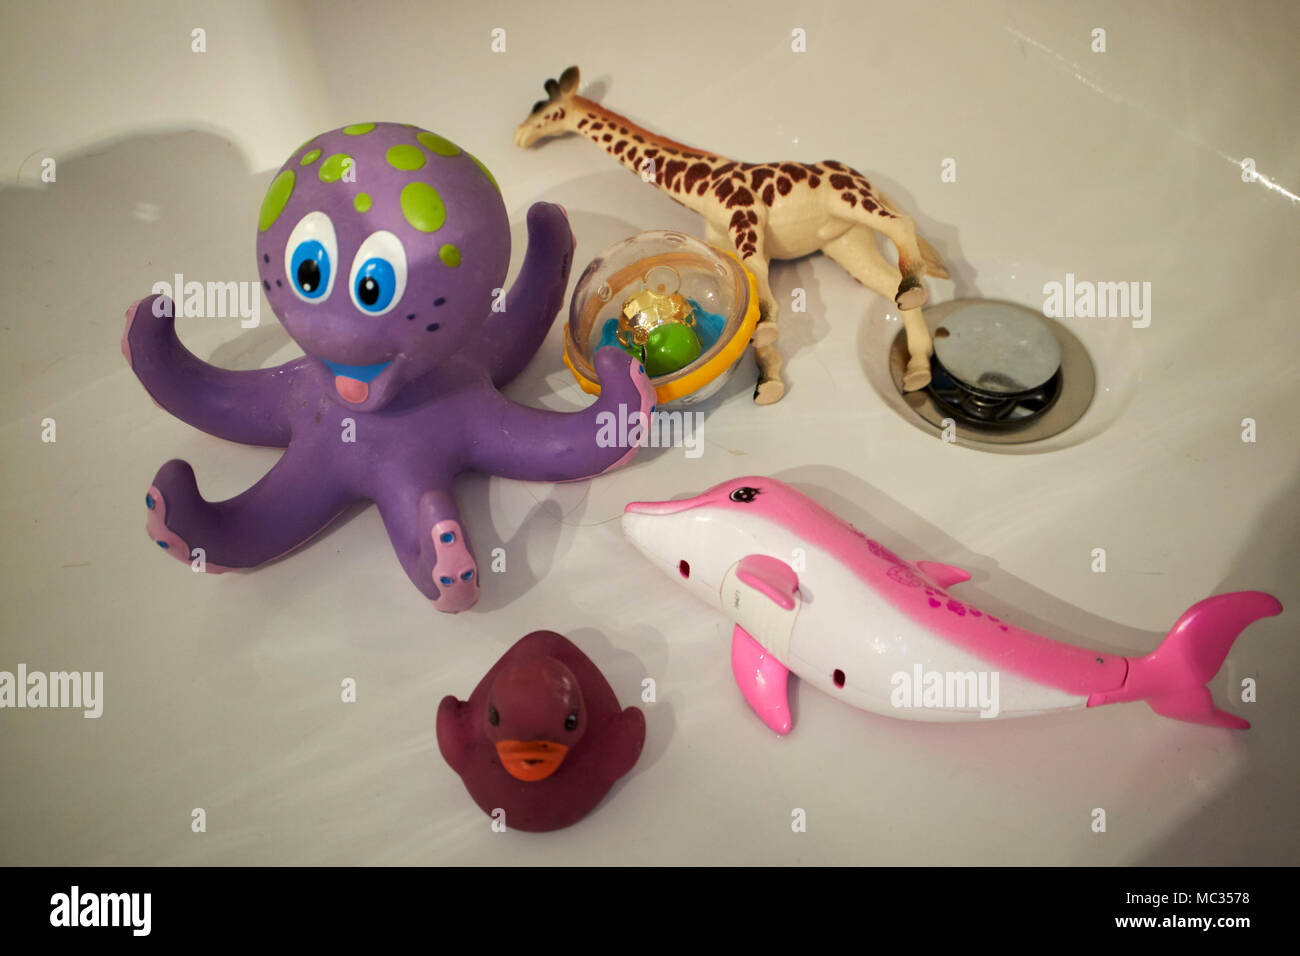 Les jouets d'enfant couché dans une baignoire vide Banque D'Images